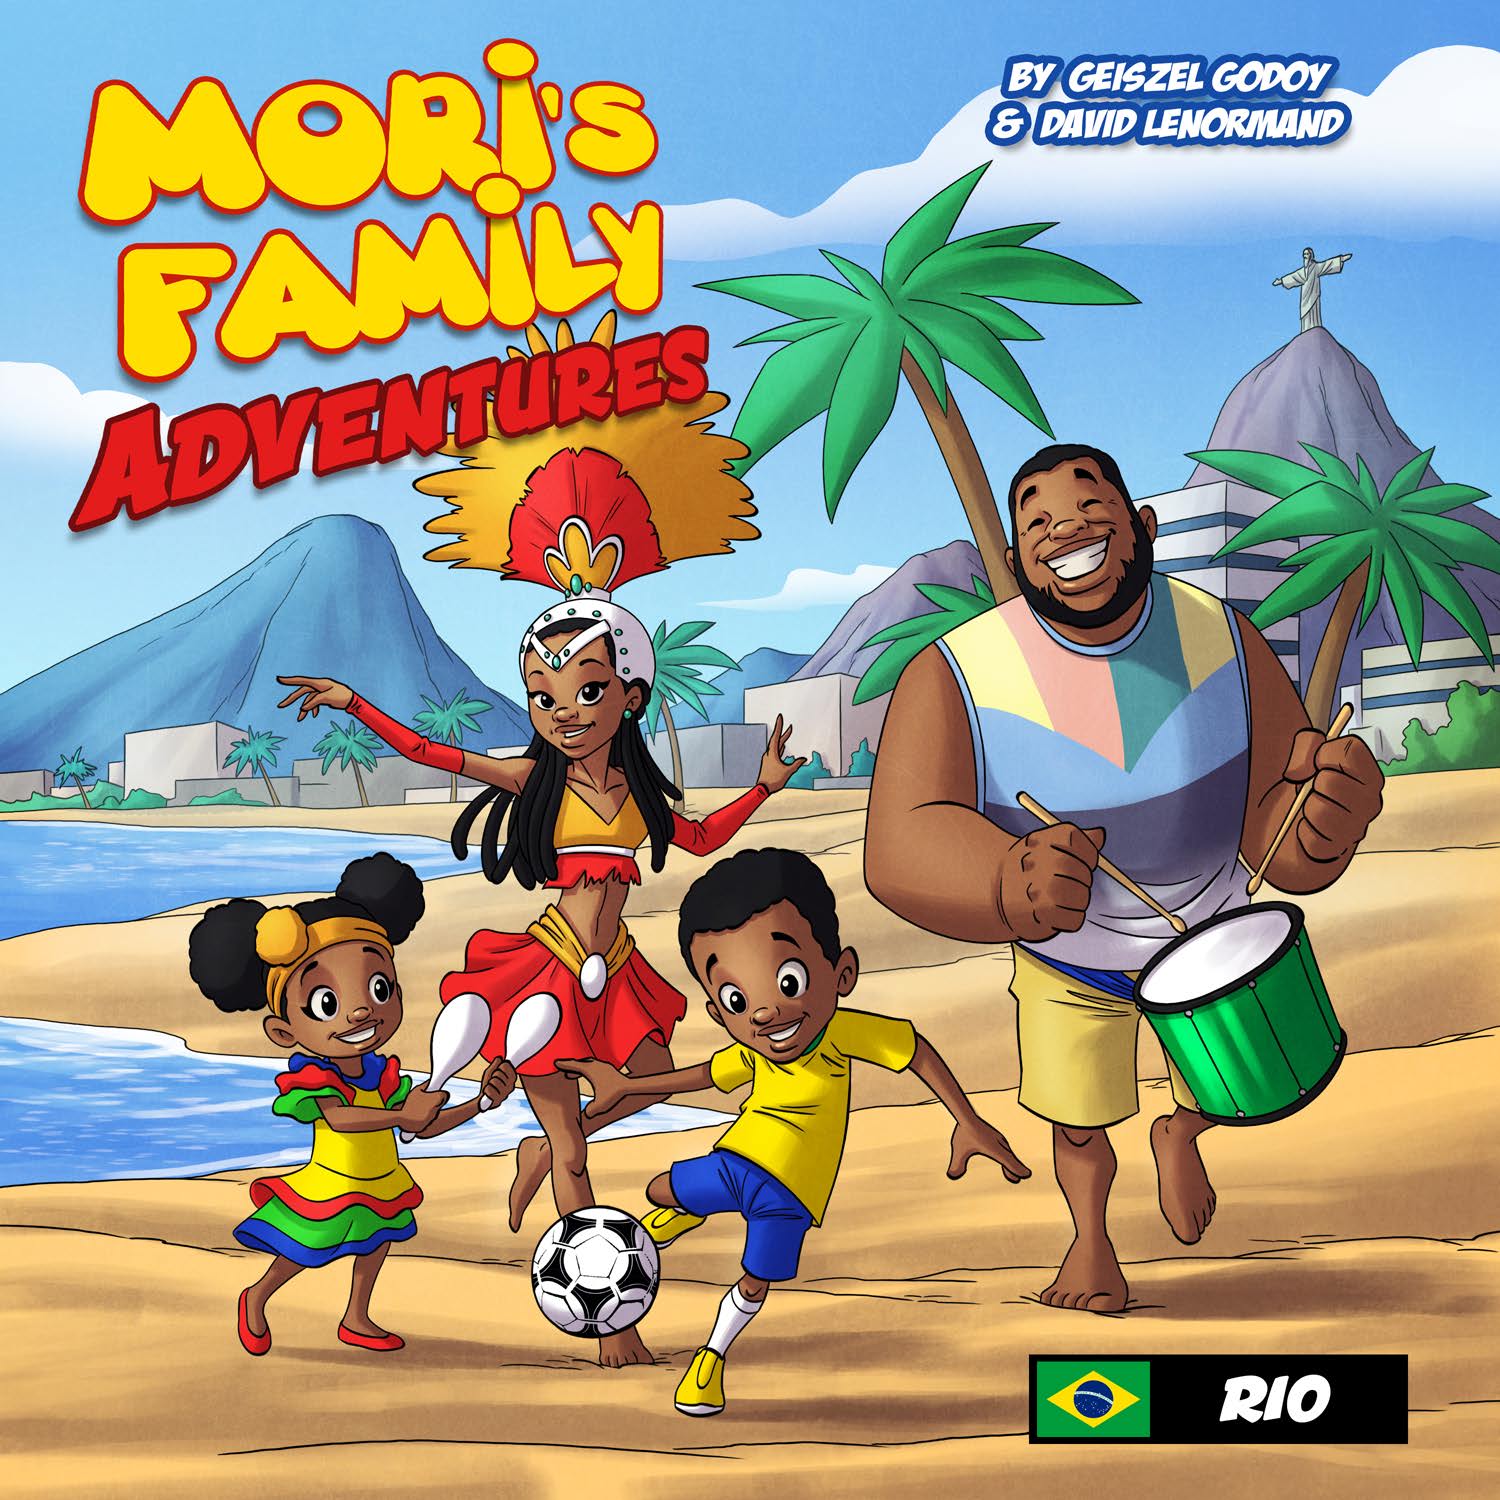 Mori's Family Adventures - Rio